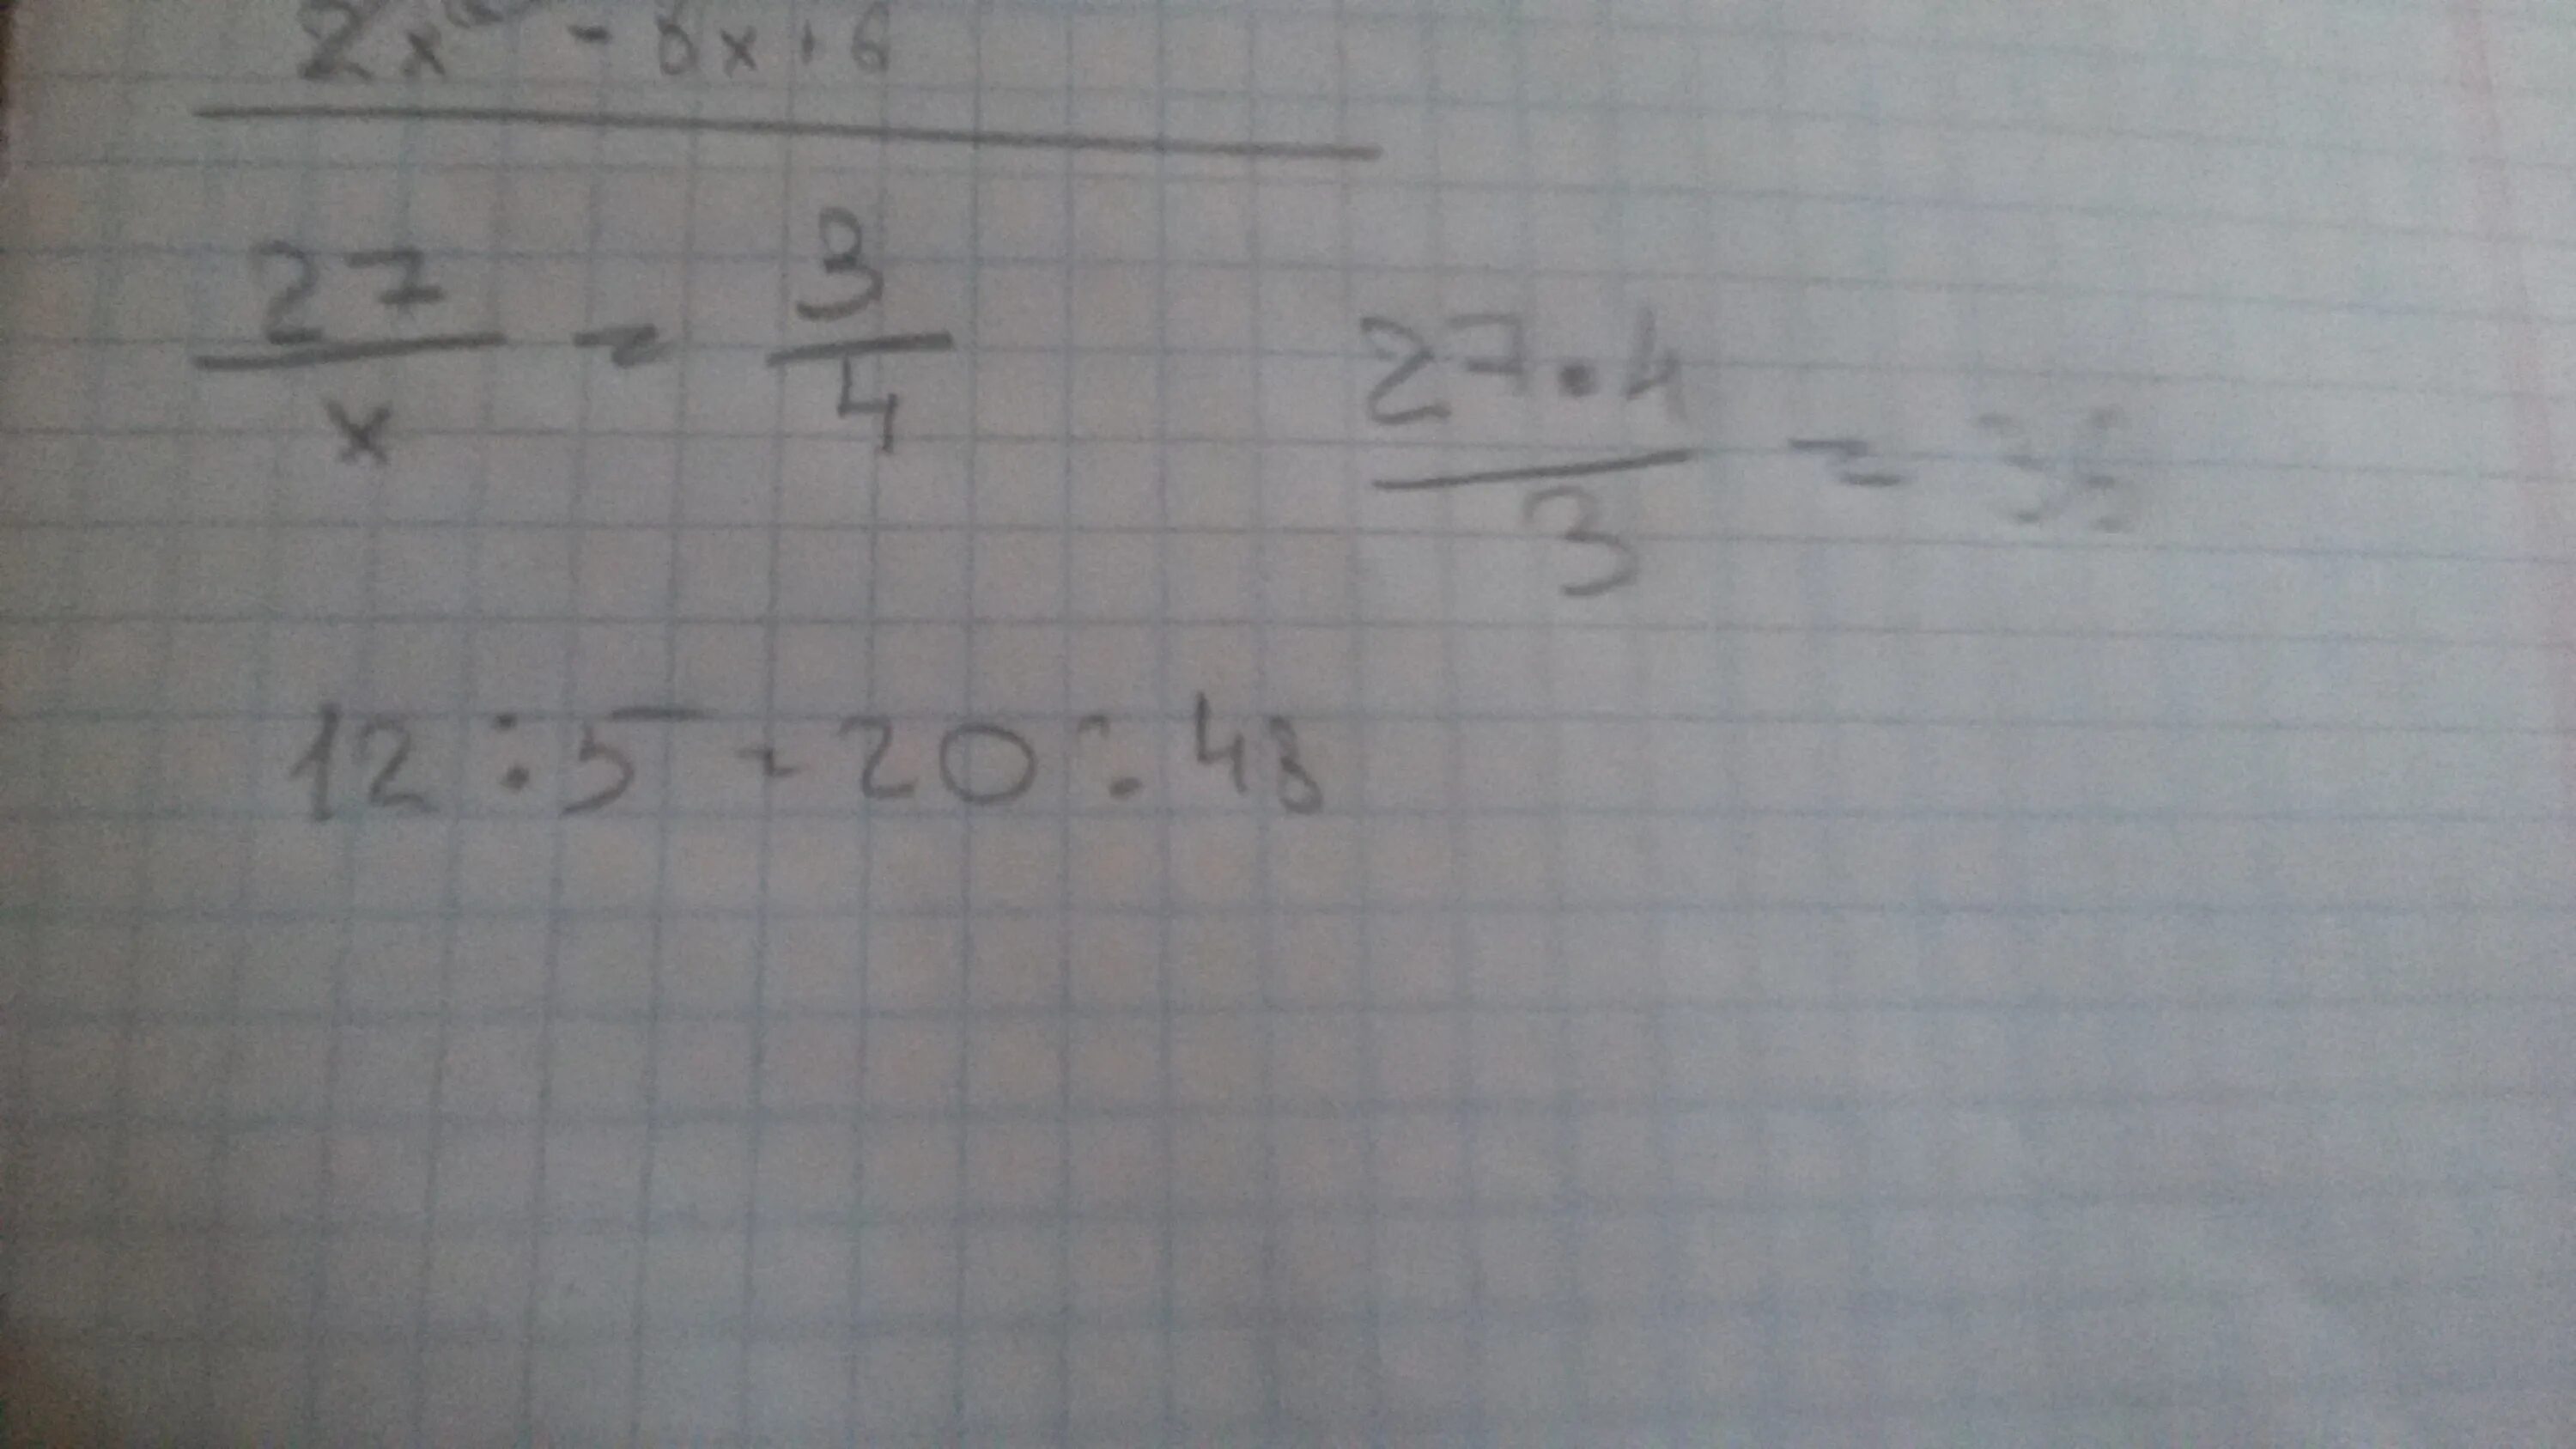 Х 27 6 8. Решите пропорцию 5 :2 1/3 х:3 1/3. 27/X 3/4 решить пропорцию. Х:1 1/5=4 2/3 :5/12 пропорция. Решите пропорцию 27/х 3/4 и 12 5 20 х.